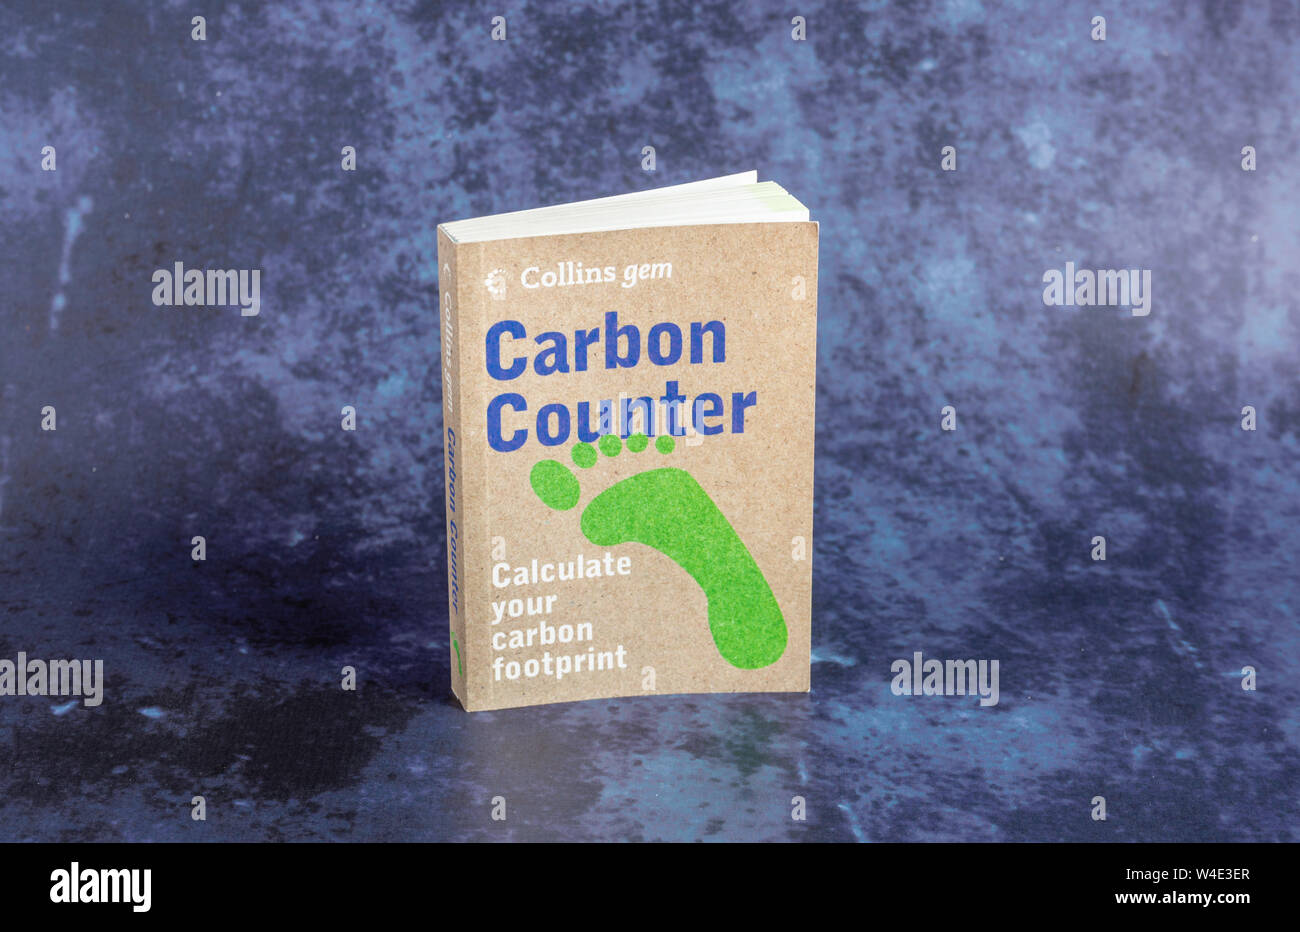 Collins Gem contatore di carbonio - calcolare la vostra impronta di carbonio libro / opuscolo Foto Stock